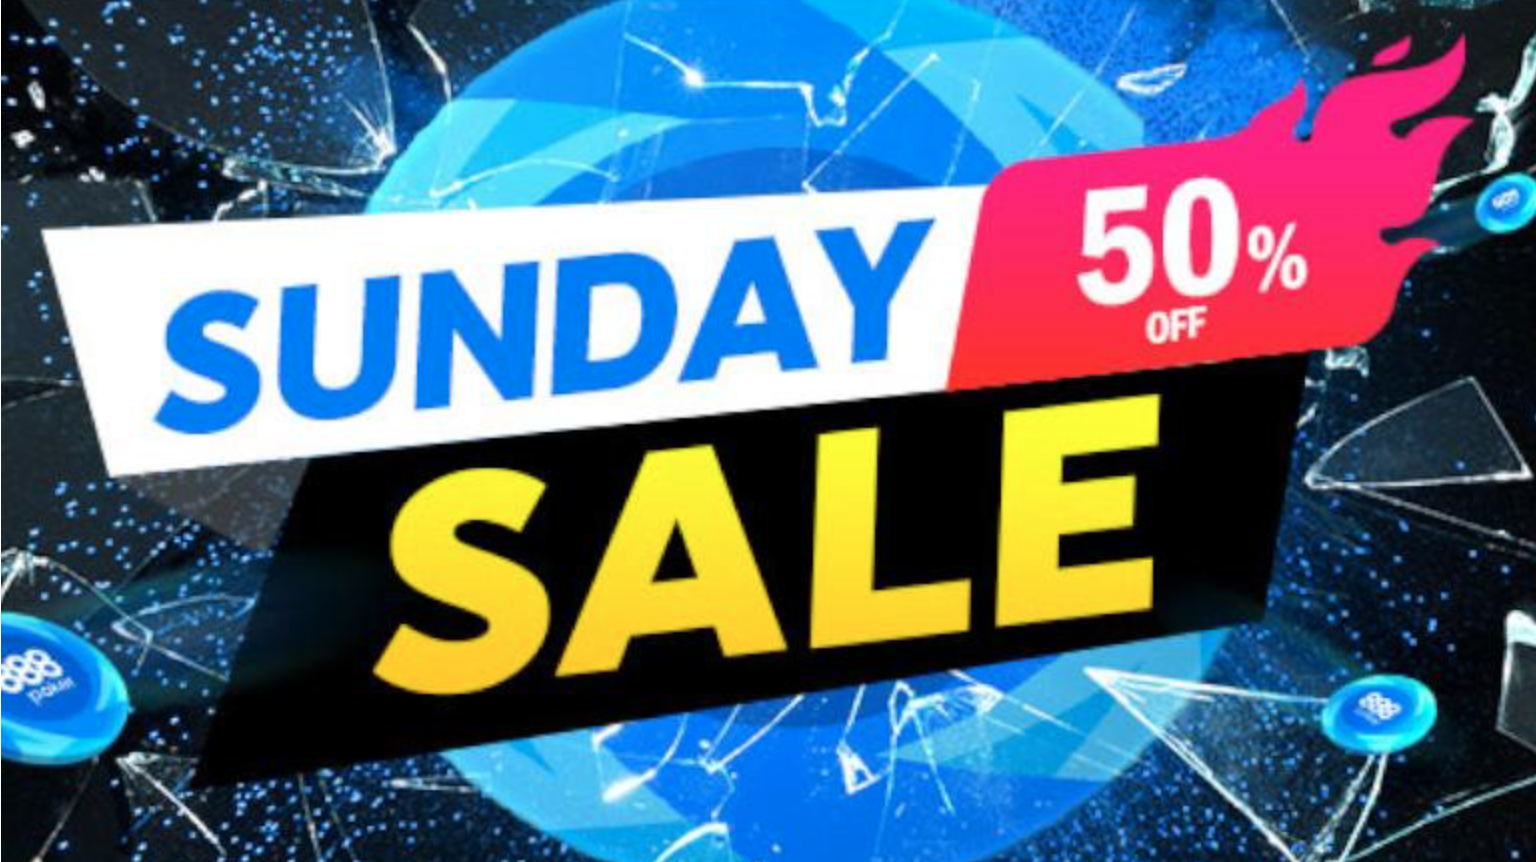 Buy-ins Slashed on 888poker This Sunday